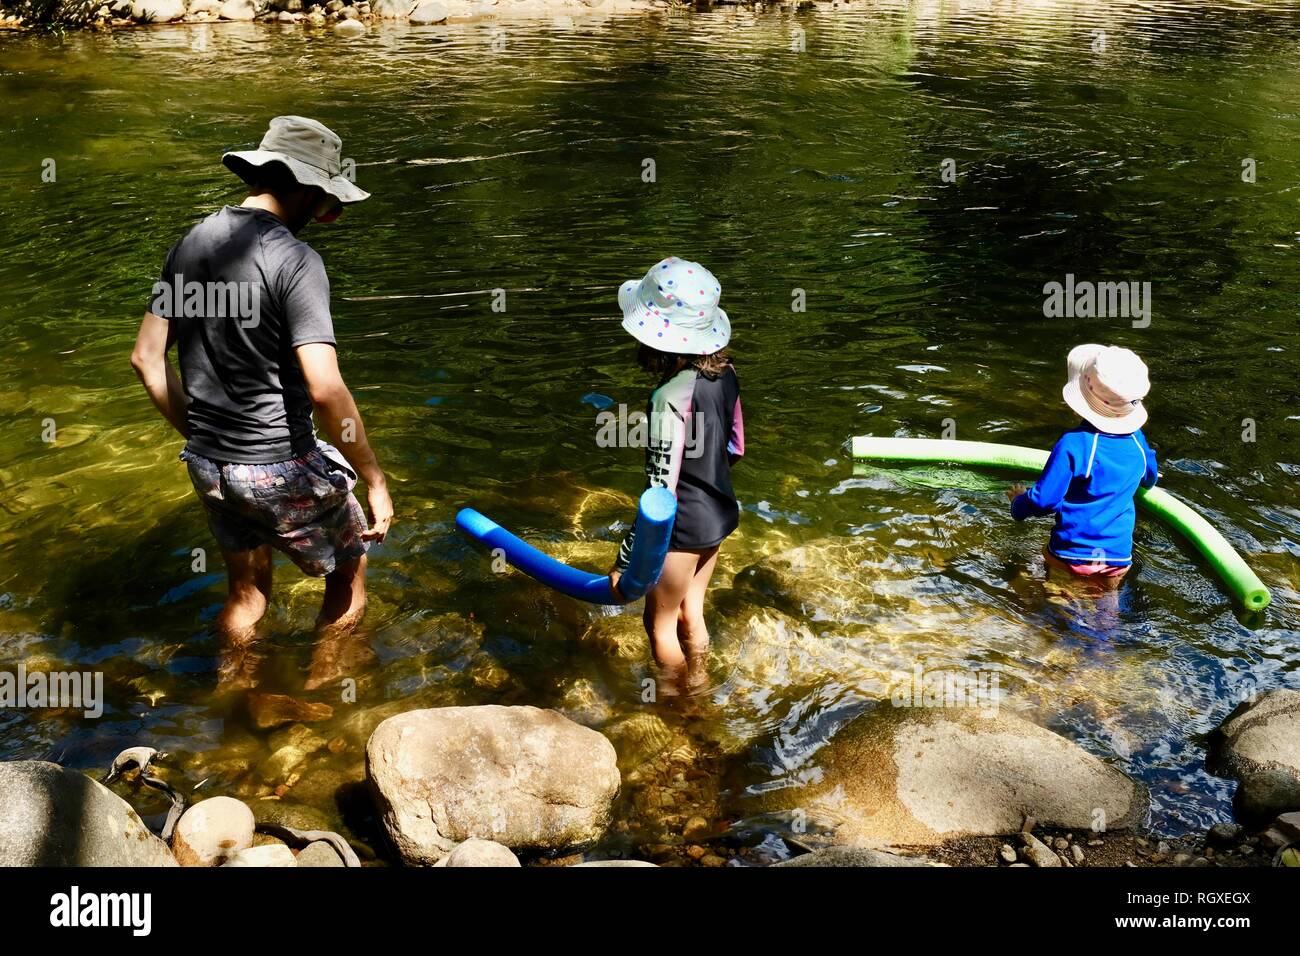 A father and children prepare to swim in a river, Finch Hatton, Queensland 4756, Australia Stock Photo